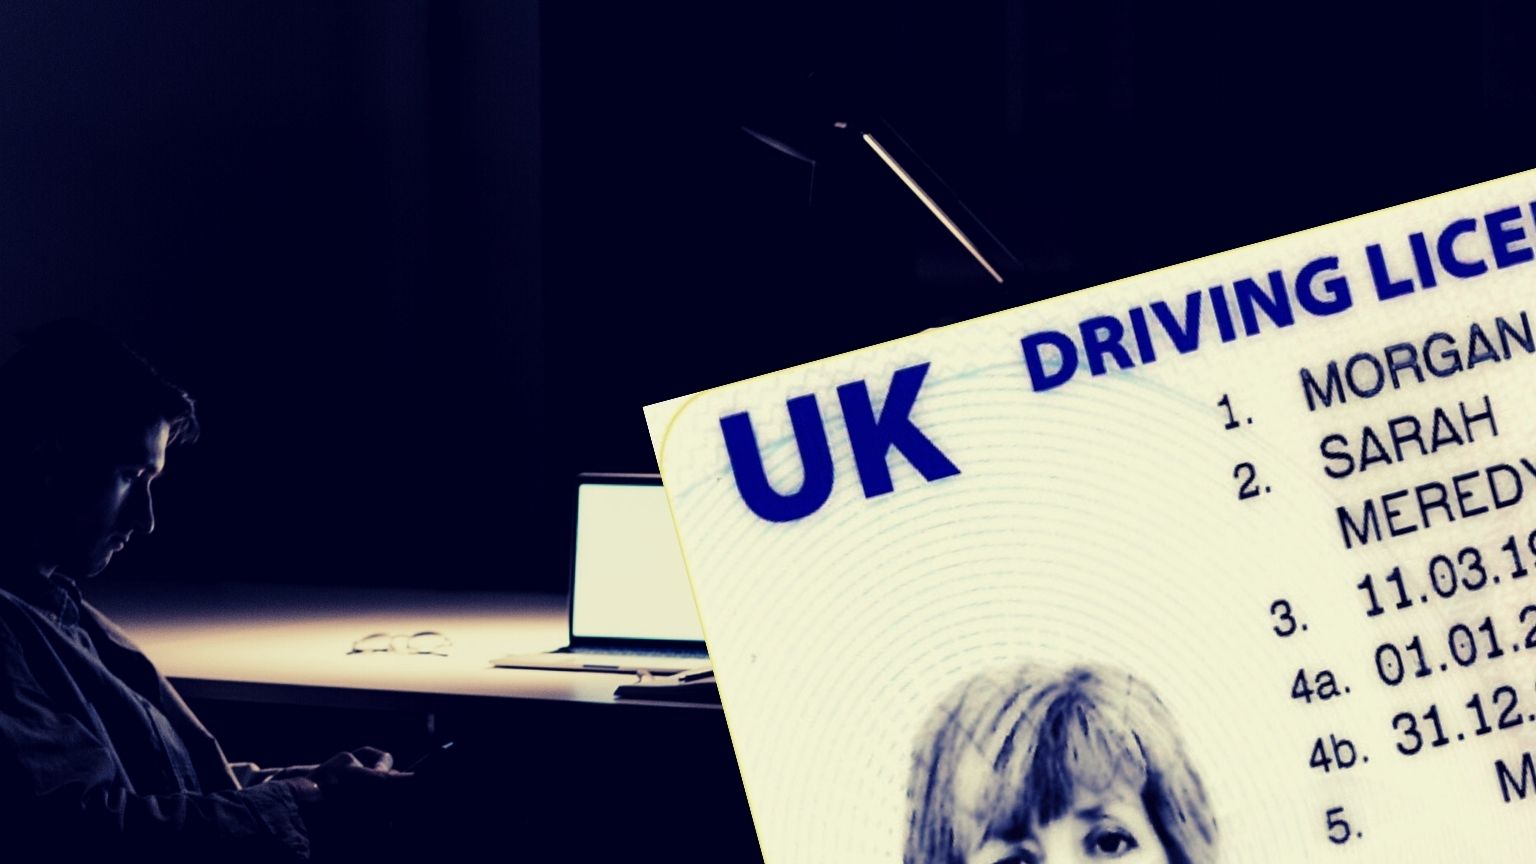 Großbritannien bringt erneut Vorschläge für Ausweiskontrollen auf Websites für Erwachsene ein und könnte die Ausweispflicht für soziale Plattformen einführen